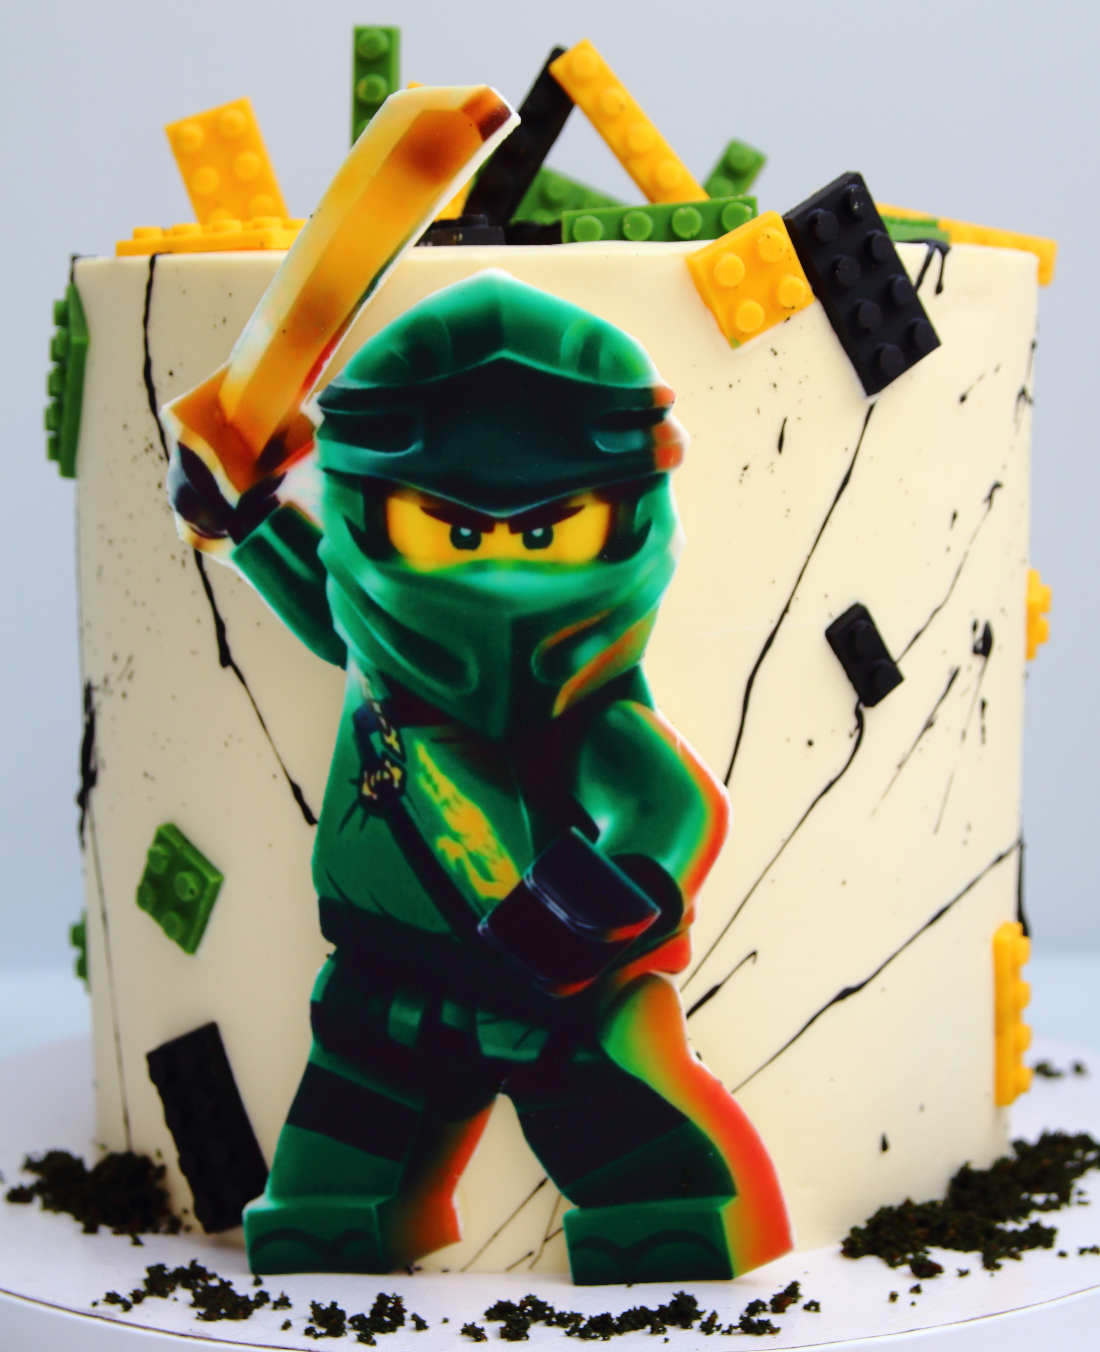 Печать персонажа Лего Ниндзяго на торте